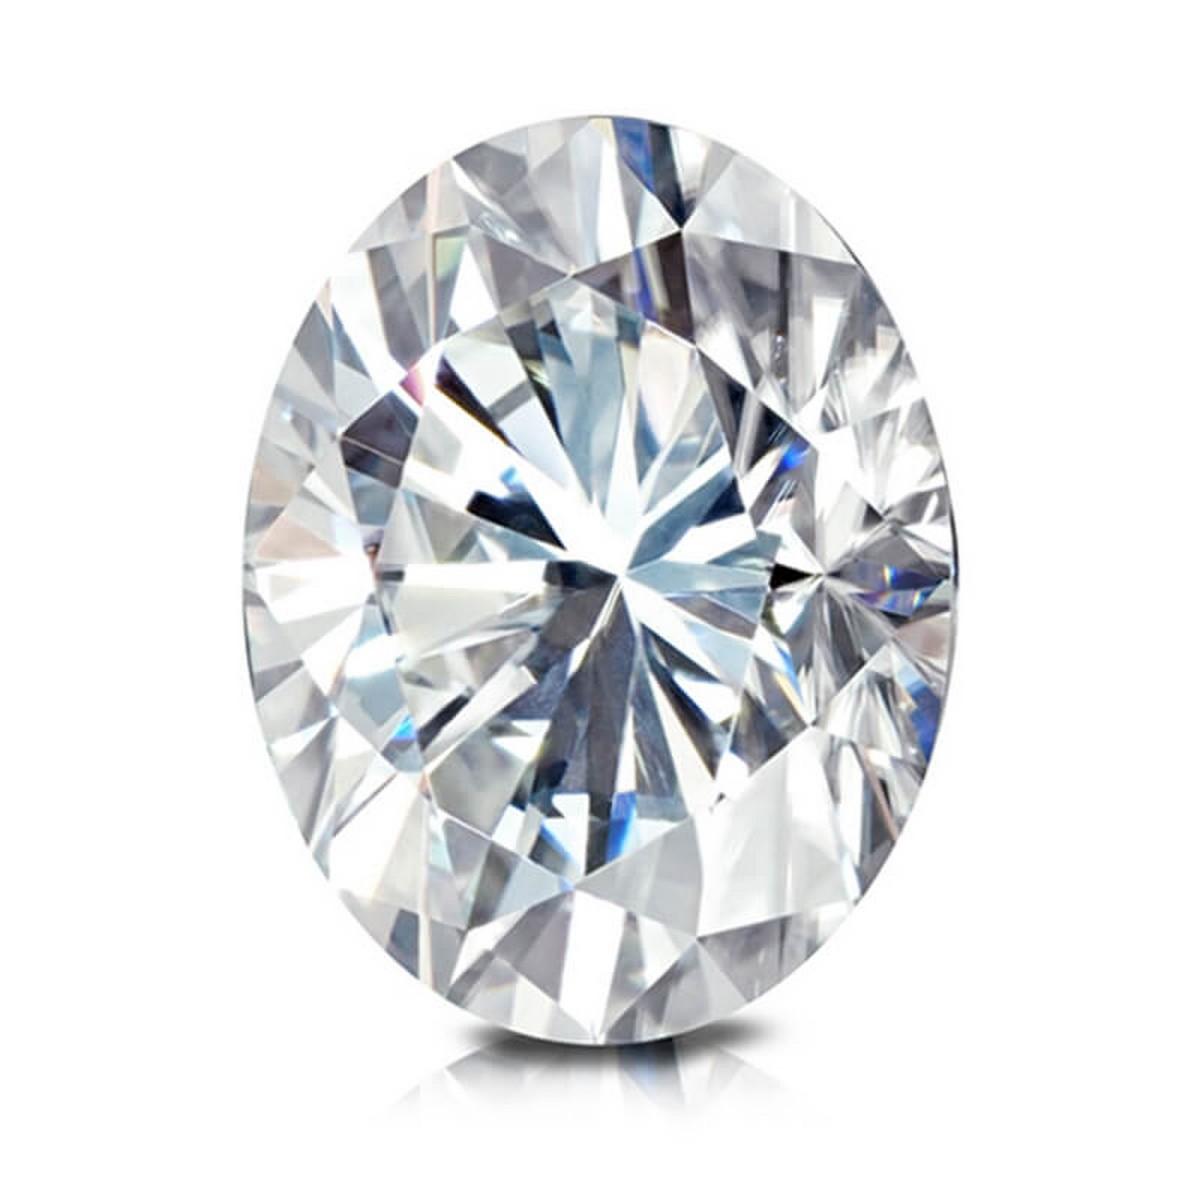 3.18 ctw. SI1 GIA Certified Oval Cut Loose Diamond (LAB GROWN)